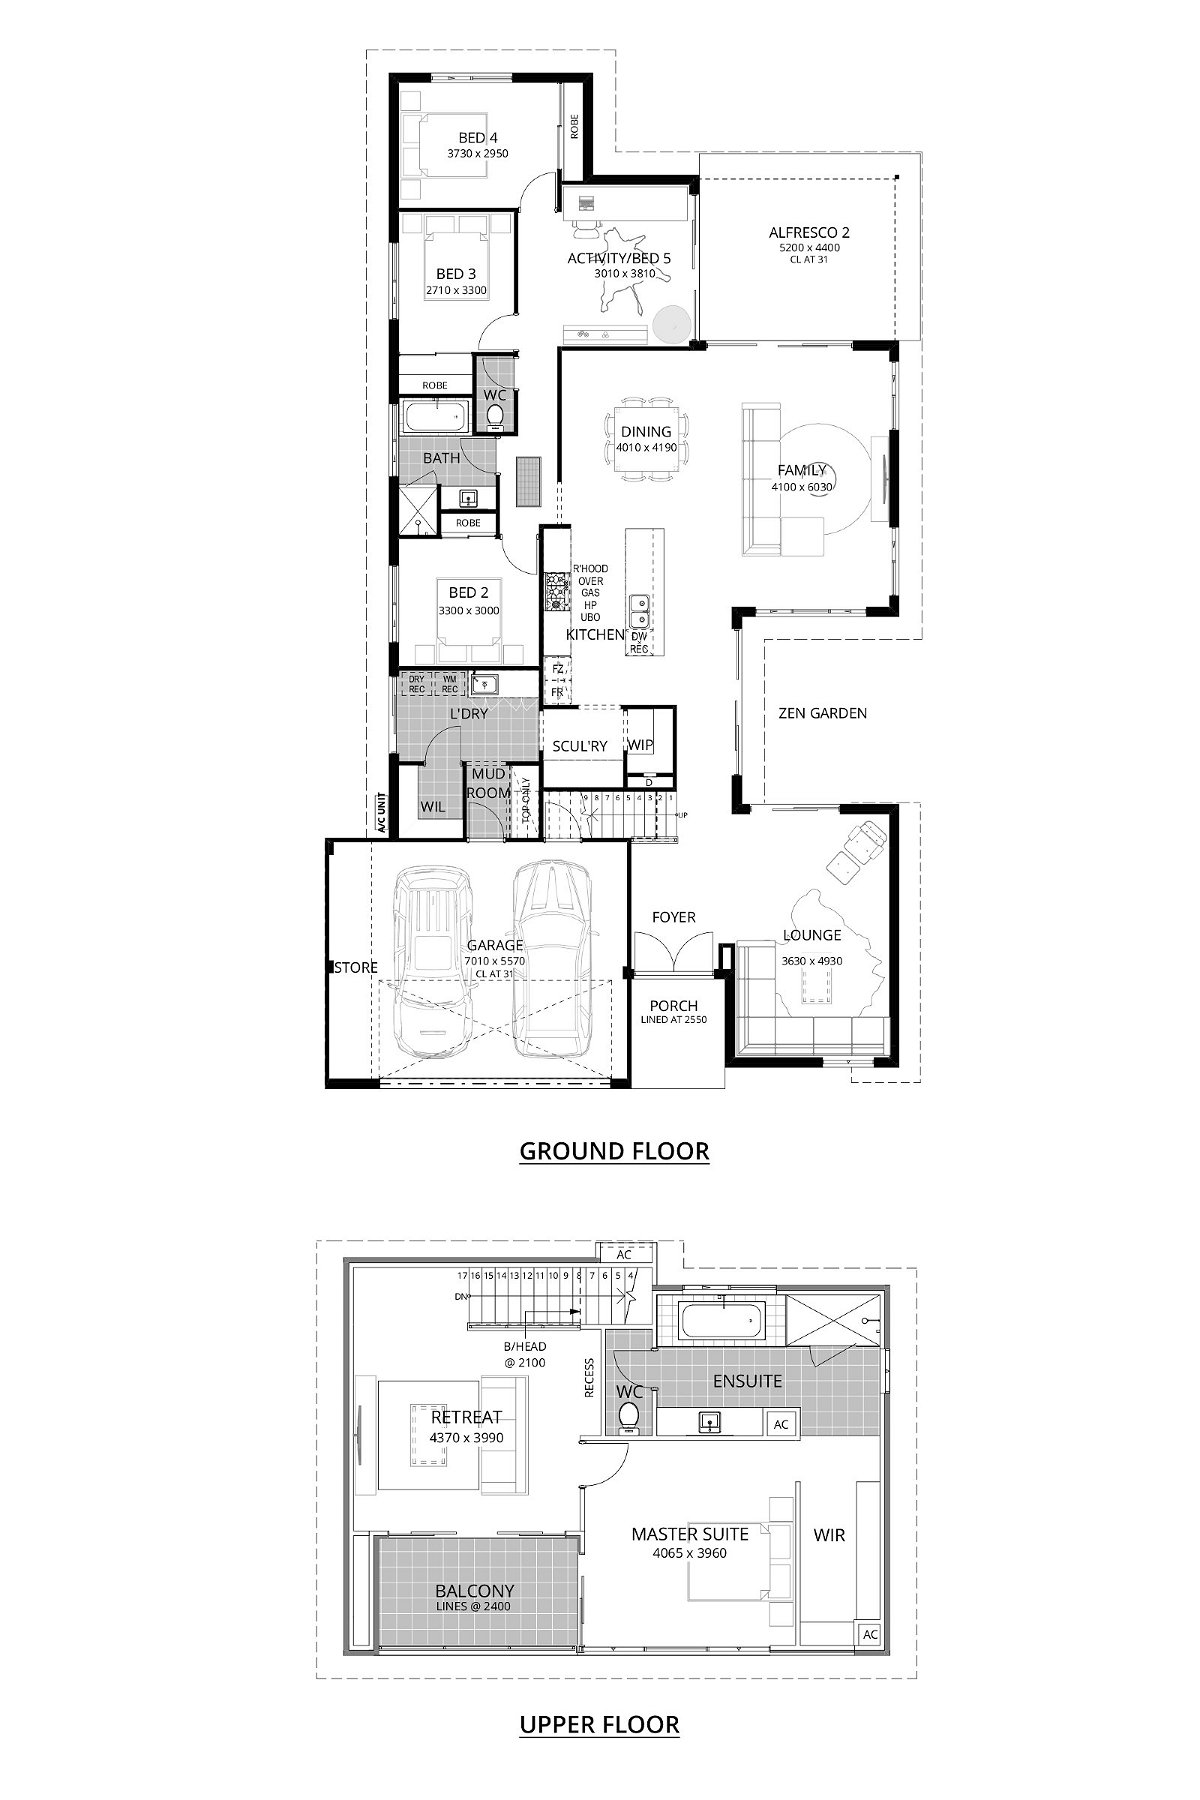 Residential Attitudes - Dream Generator - Floorplan - Dream Generator Website Floorplan